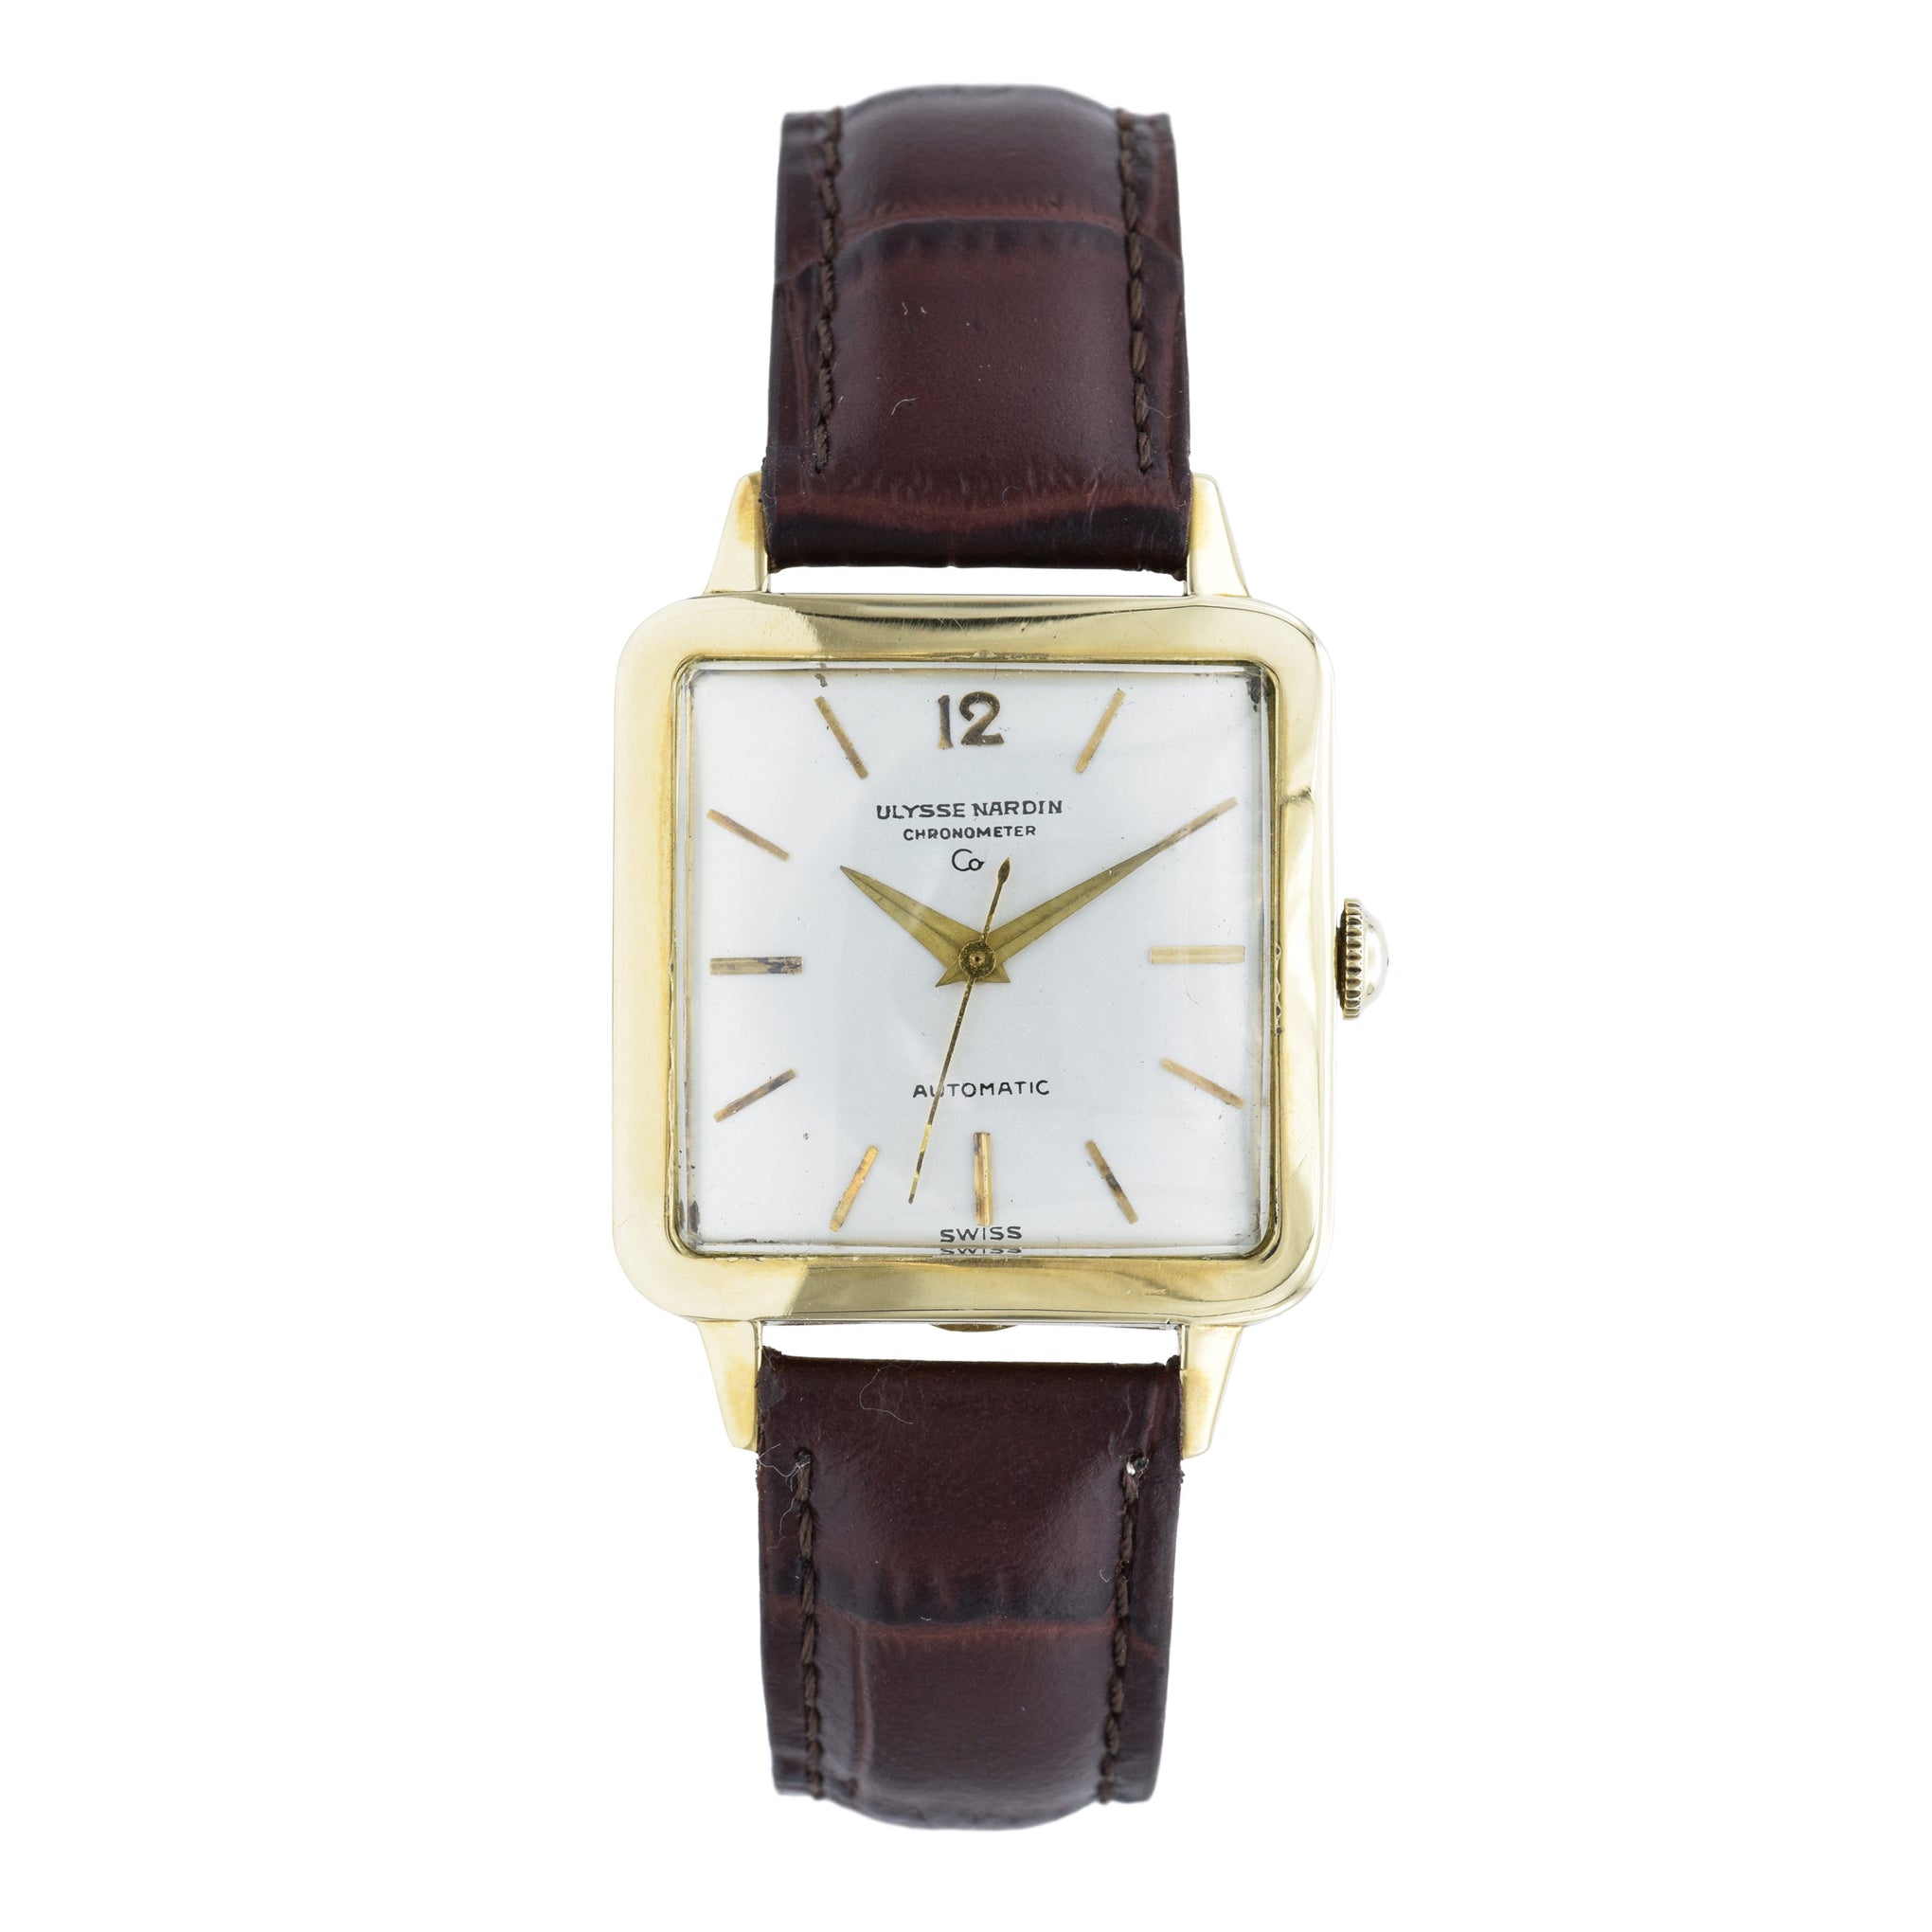 Vintage 1960s Ulysse Nardin Chronometer Watch